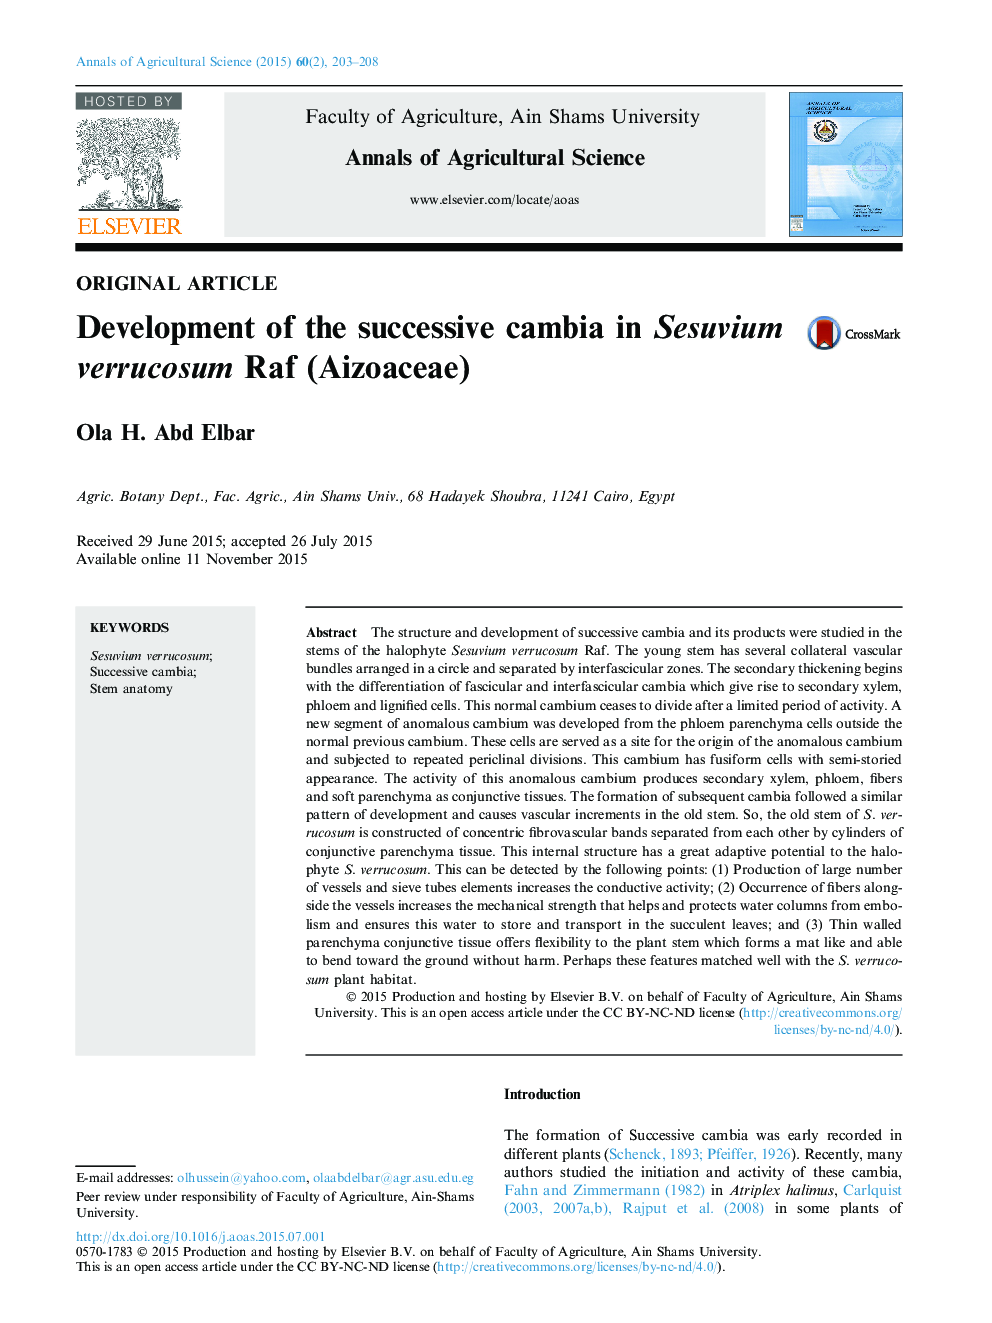 Development of the successive cambia in Sesuvium verrucosum Raf (Aizoaceae) 